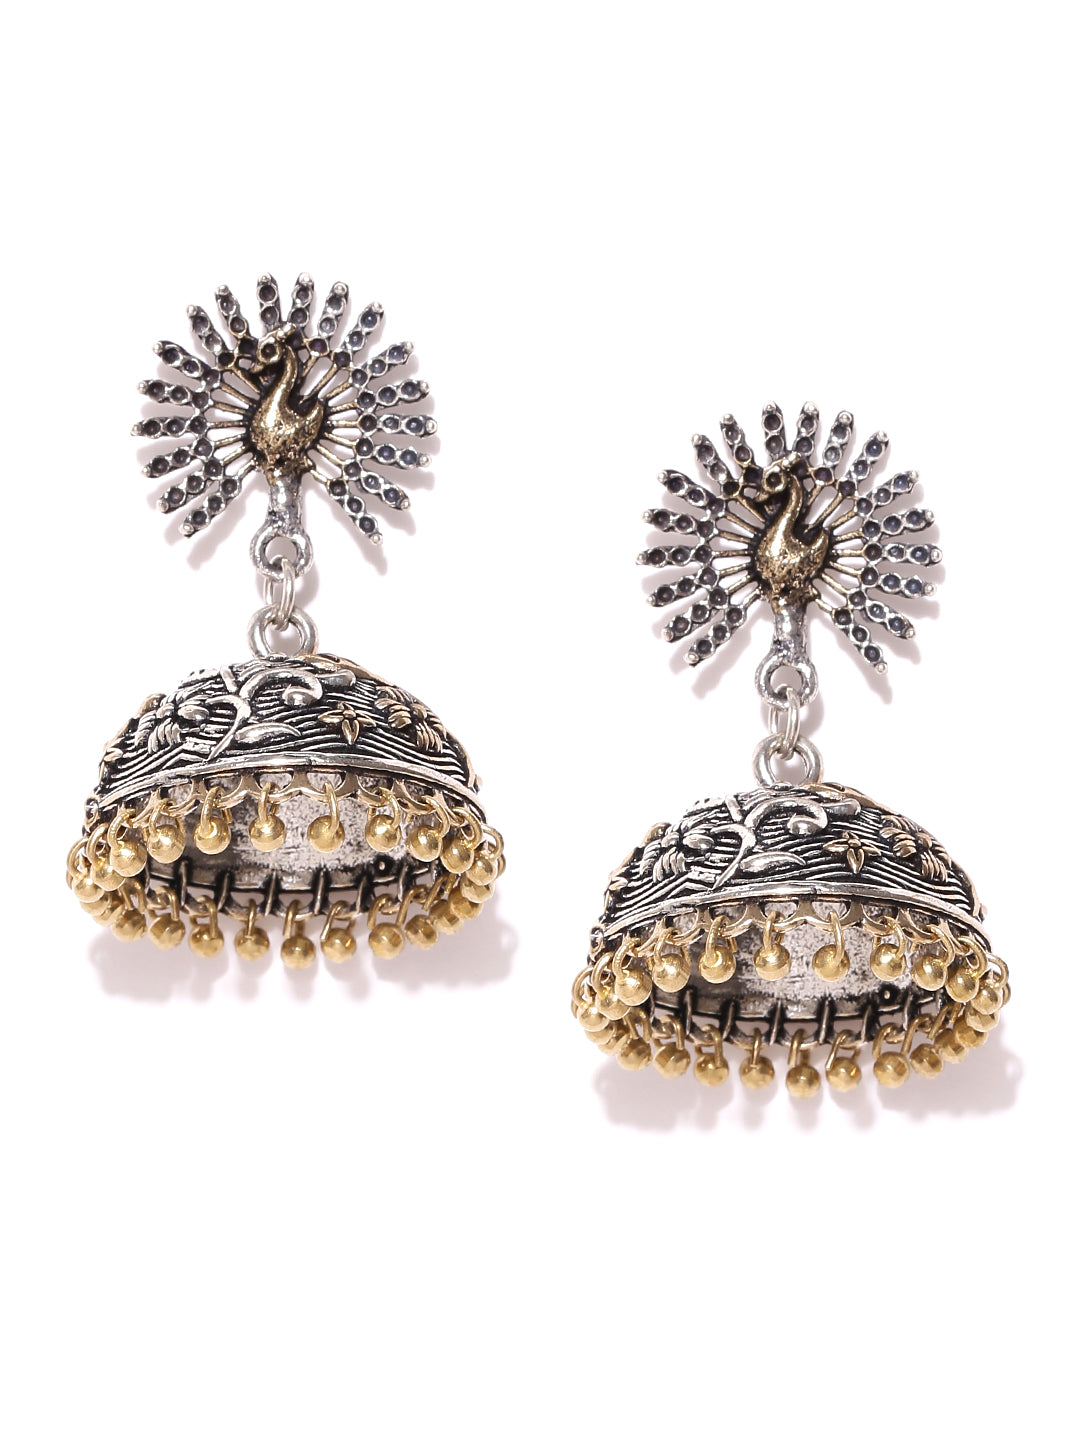 Peacock Inspired Two Tone German Silver Oxidised Handmade Earrings